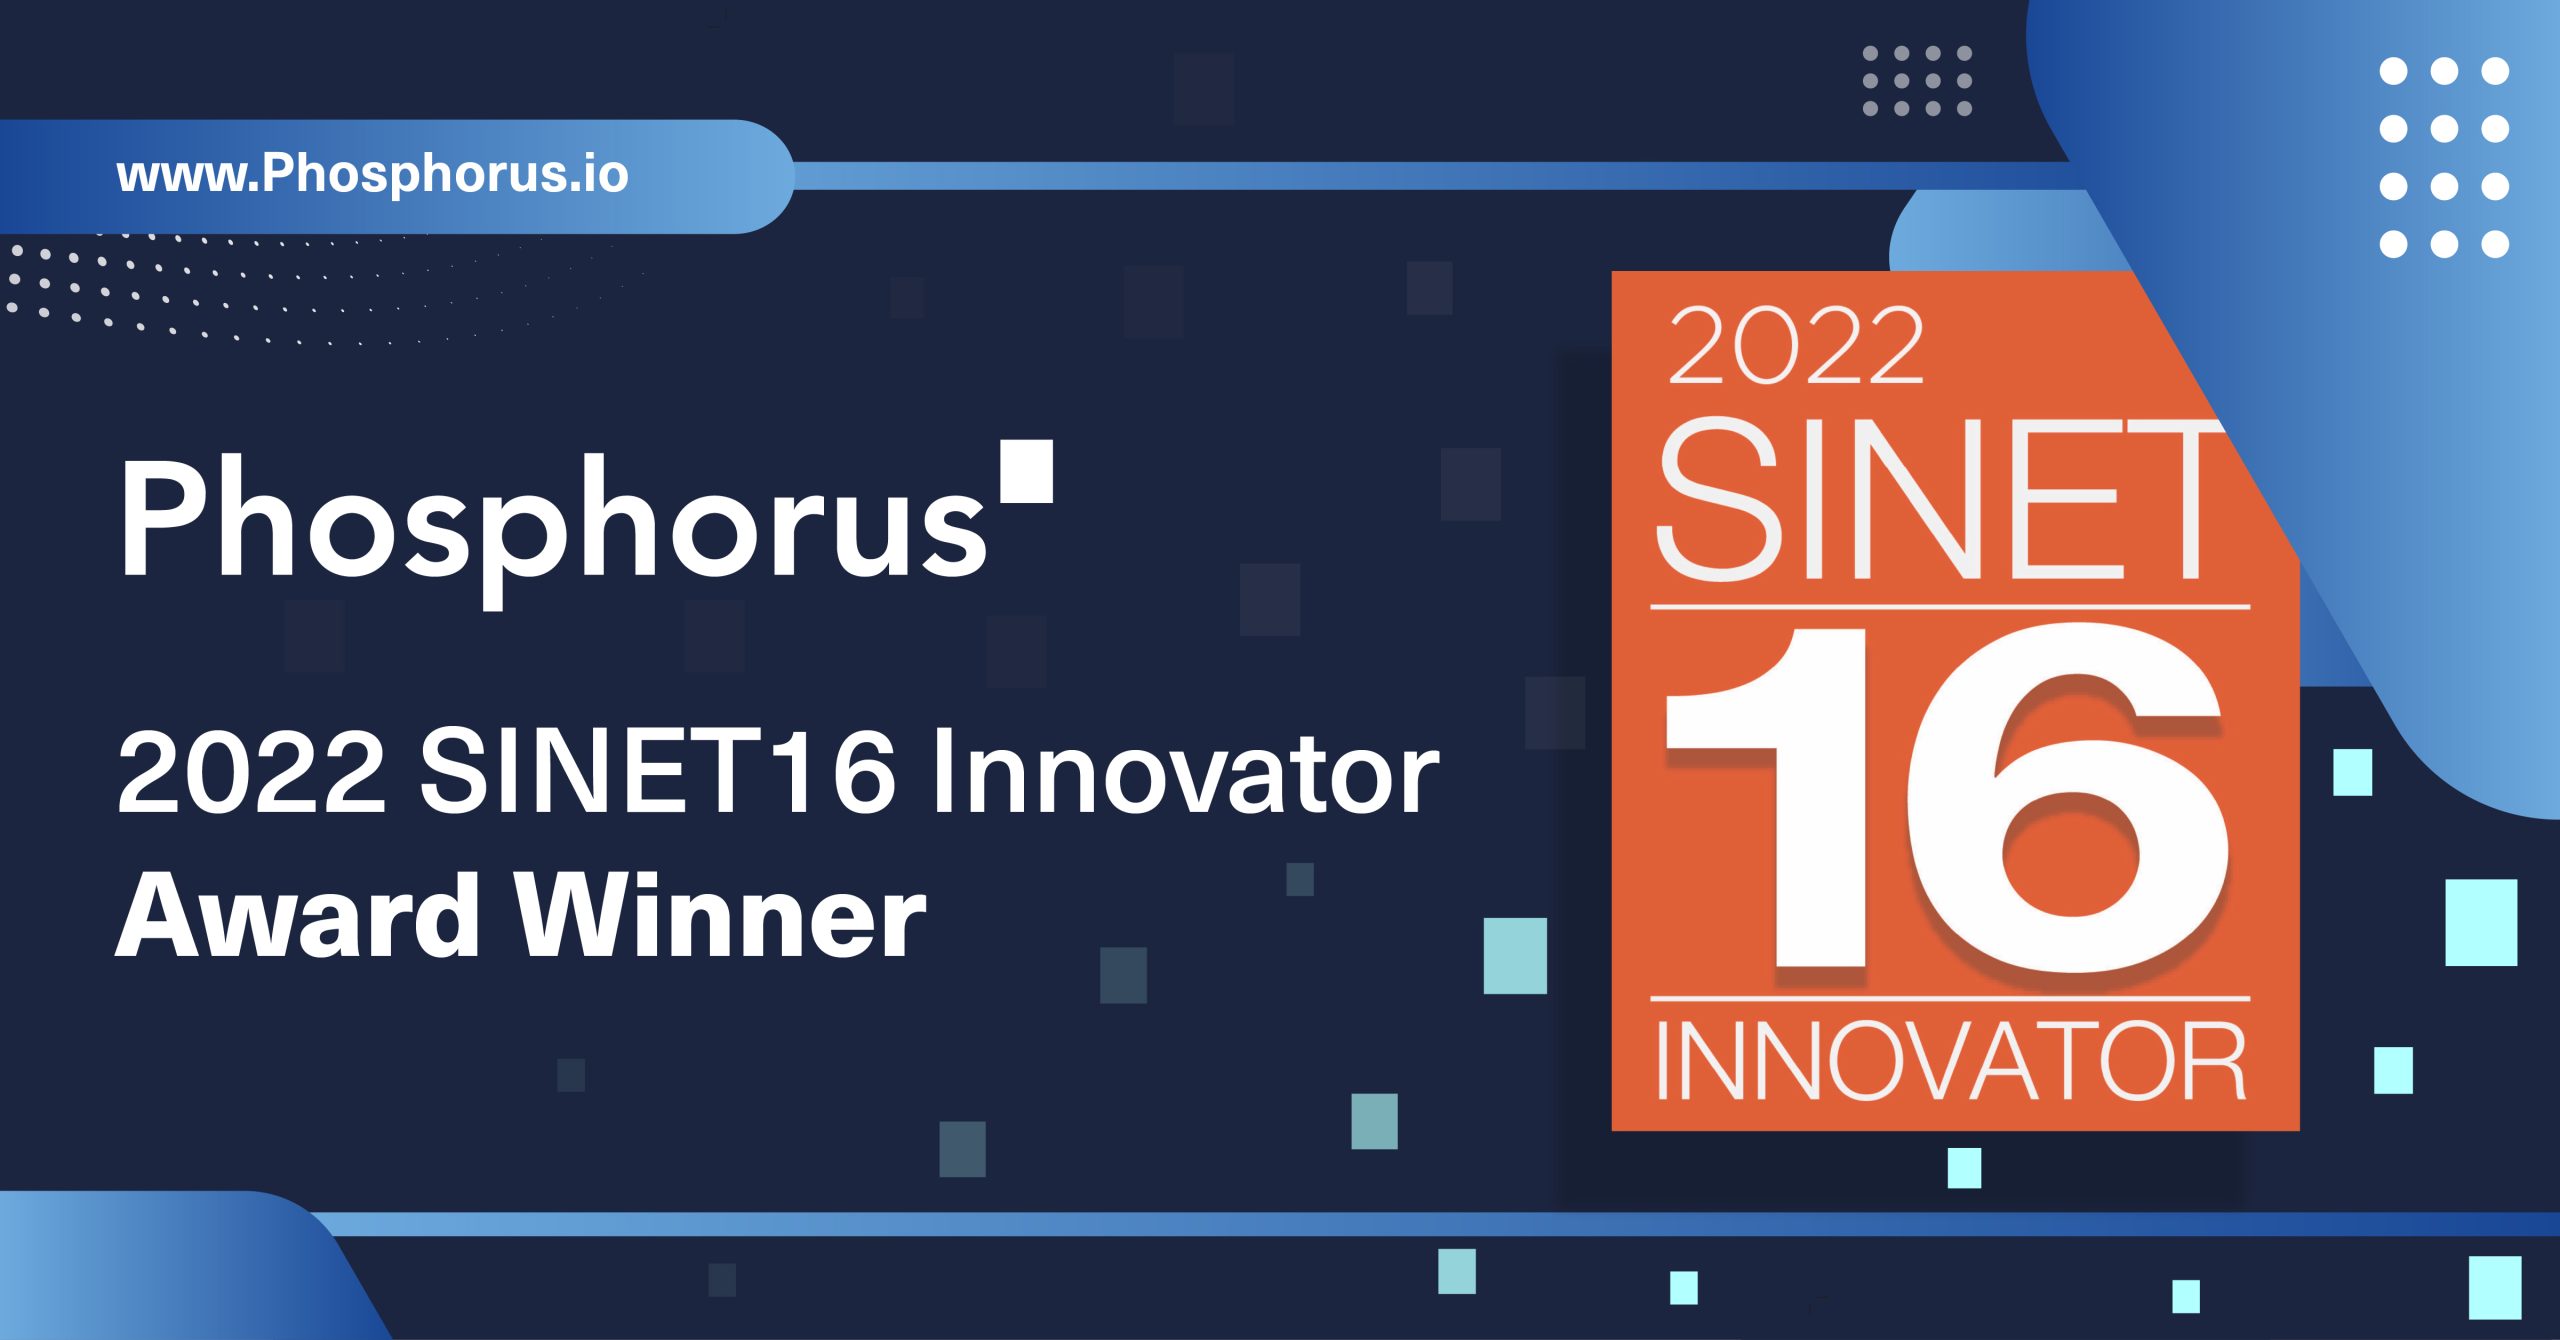 2022 SINET16 Innovator Award Winner